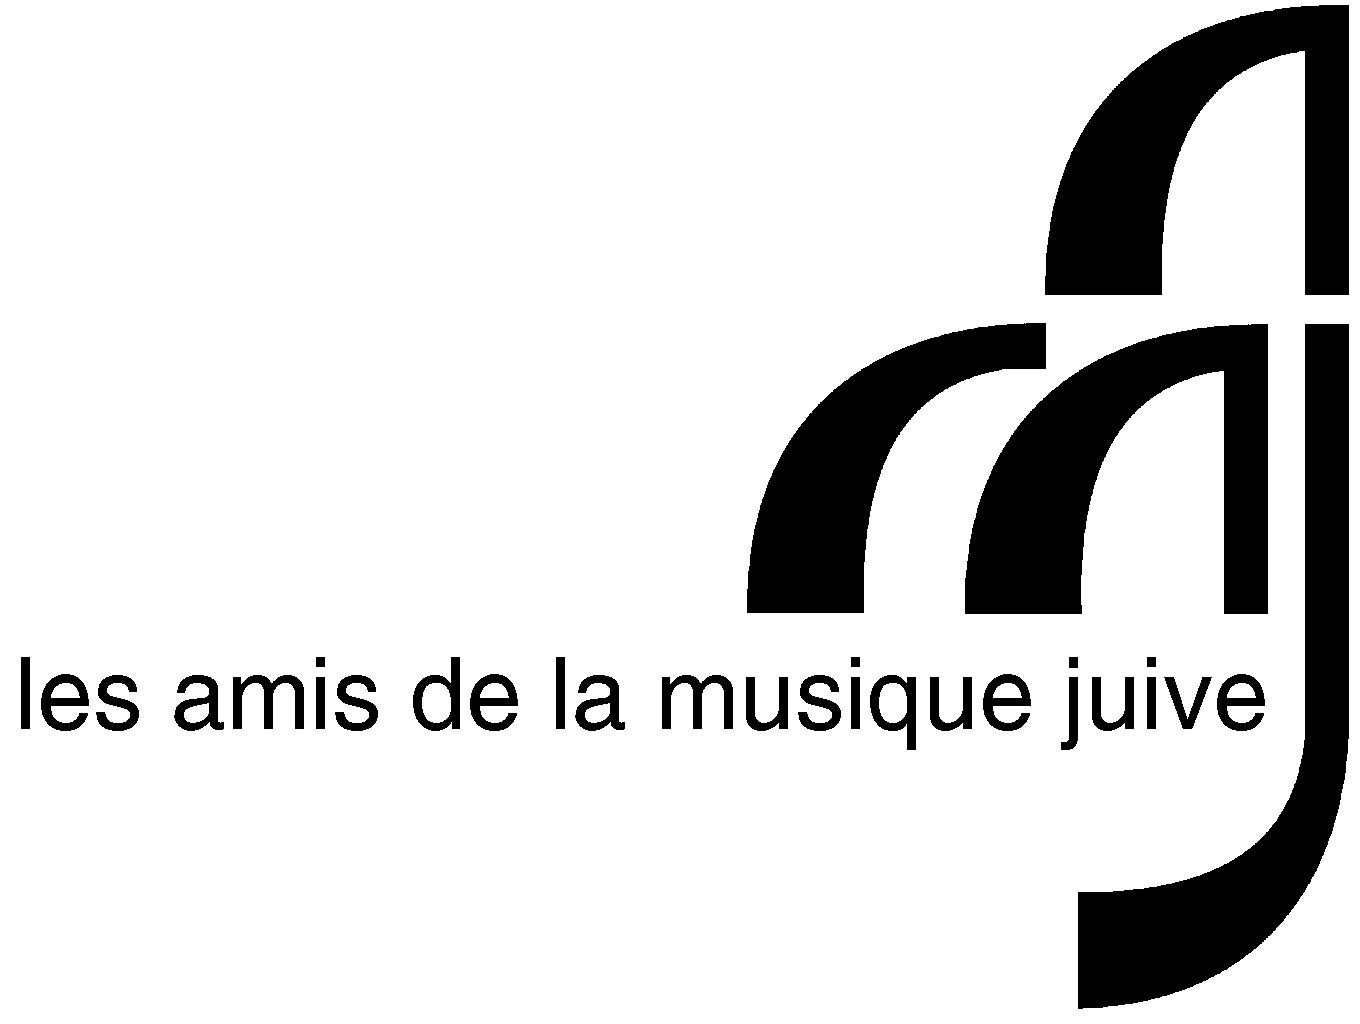 Friends of Jewish Music - Amis de la musique juive